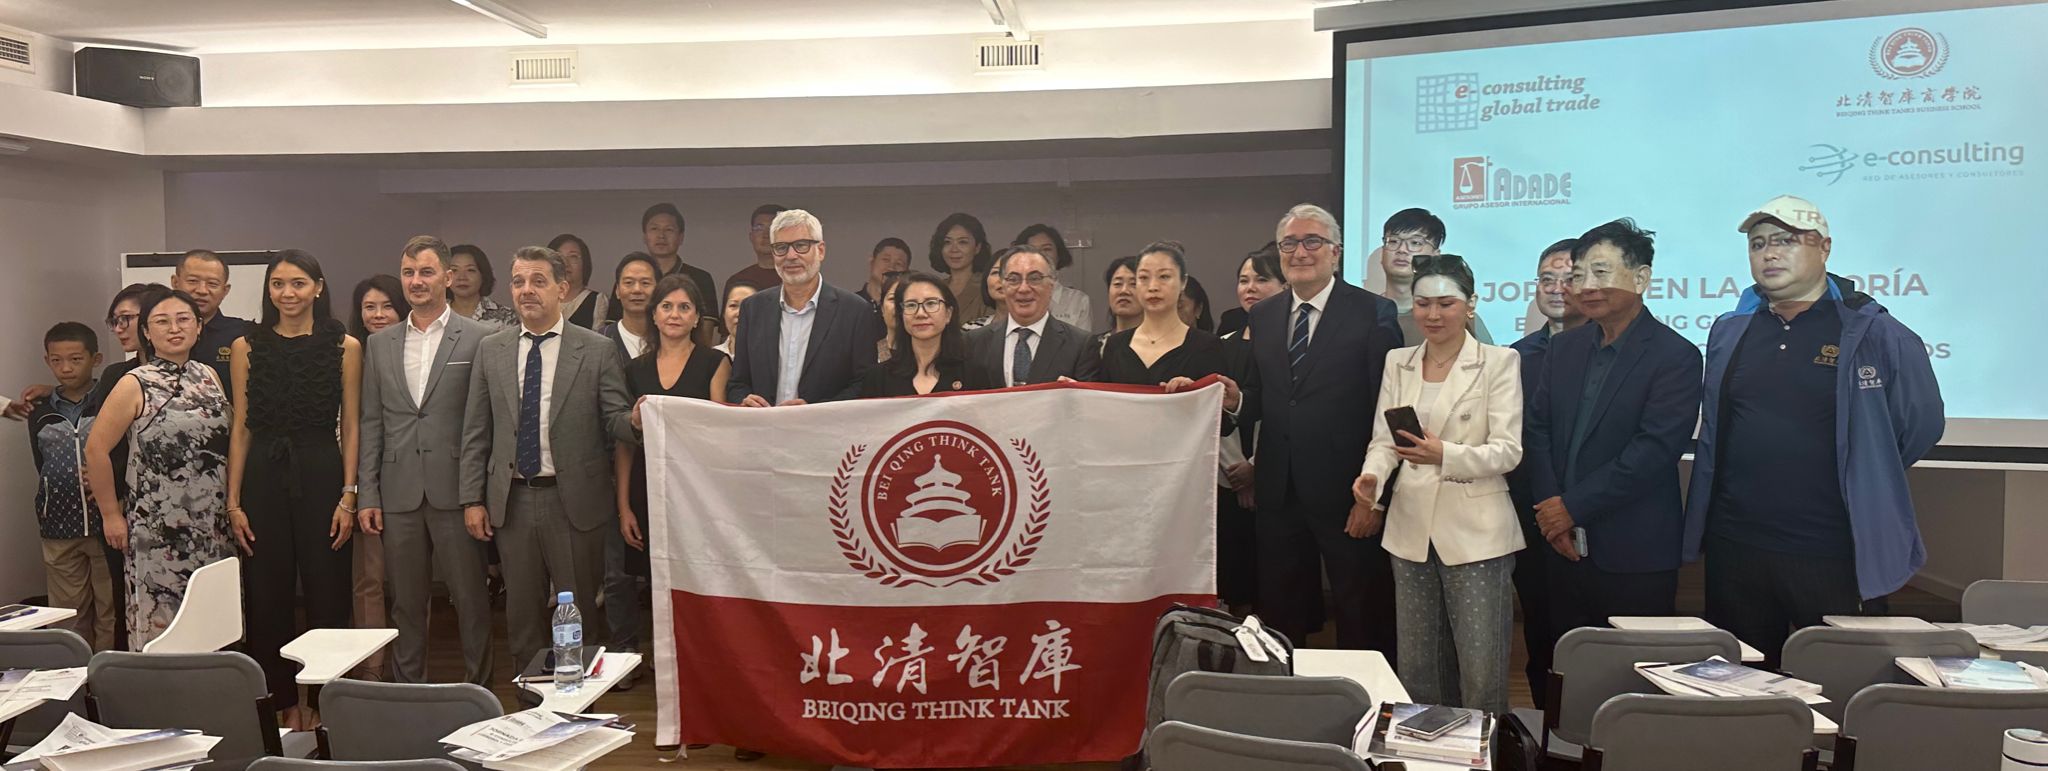 El Grupo ADADE/E-Consulting ha recibido a la delegación de Beiqing Think Tanks Business School, una de las más prestigiosas escuelas de negocios de China